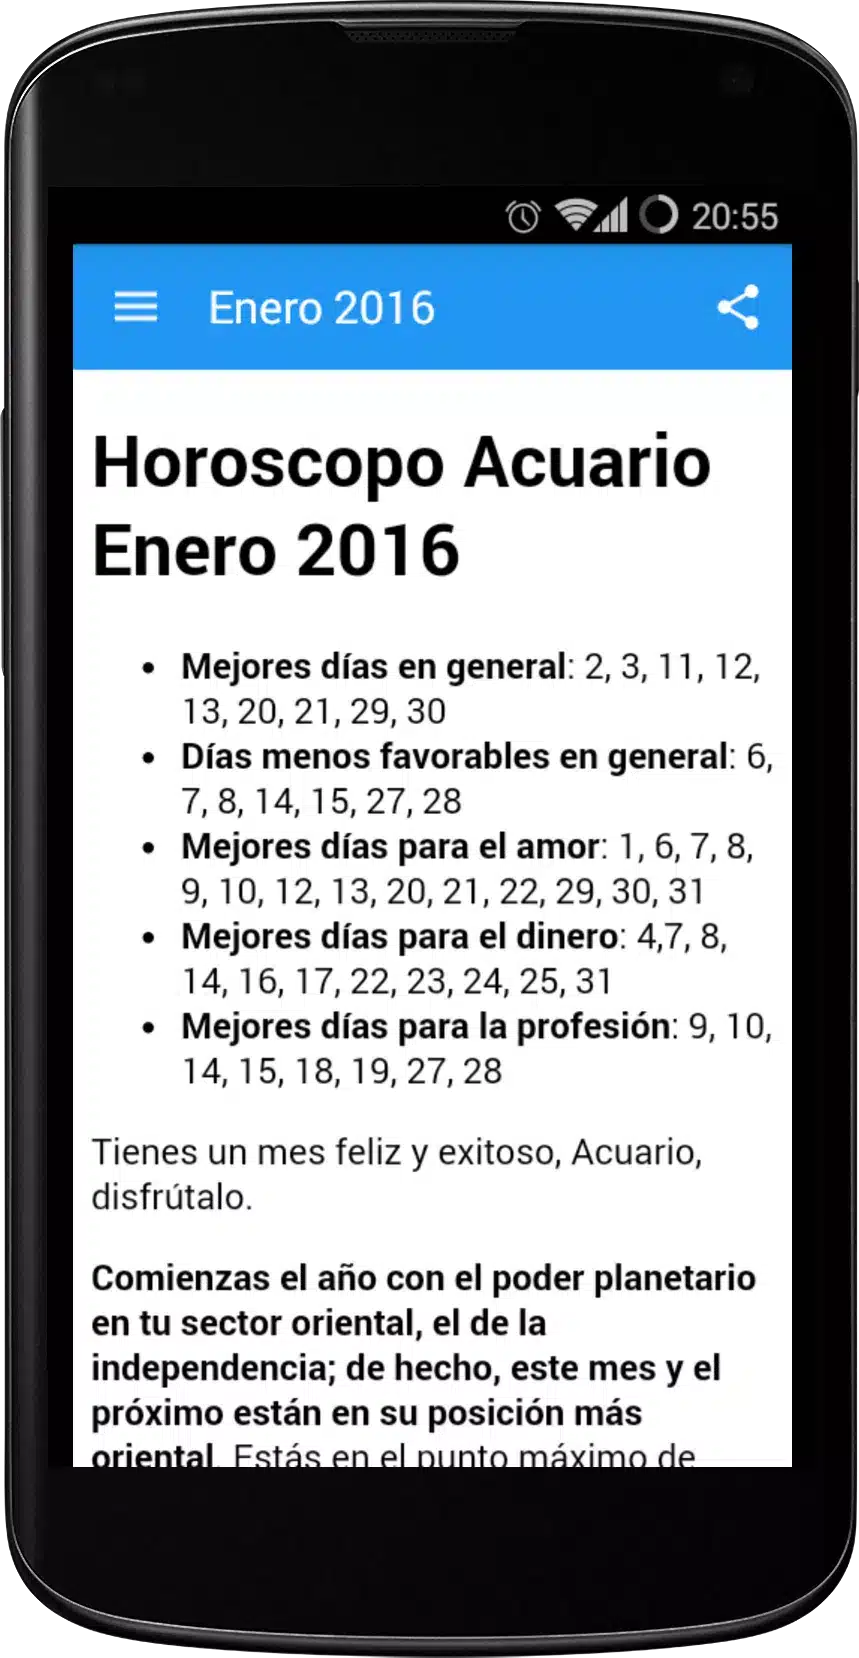 Horoscopo Acuario 2016 Image 1